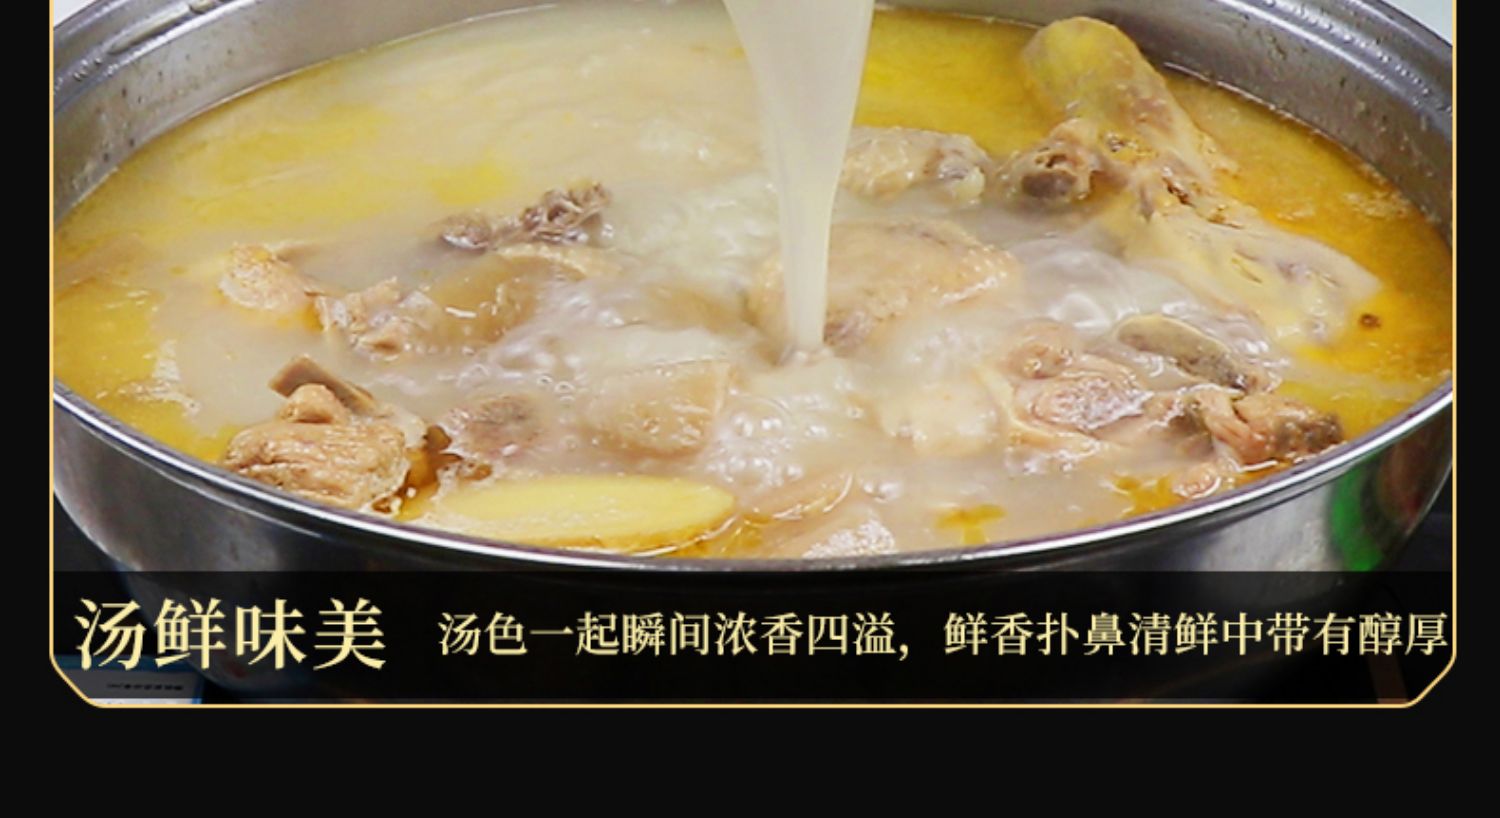 吉顺隆酸萝卜老鸭汤炖汤调料150g*5